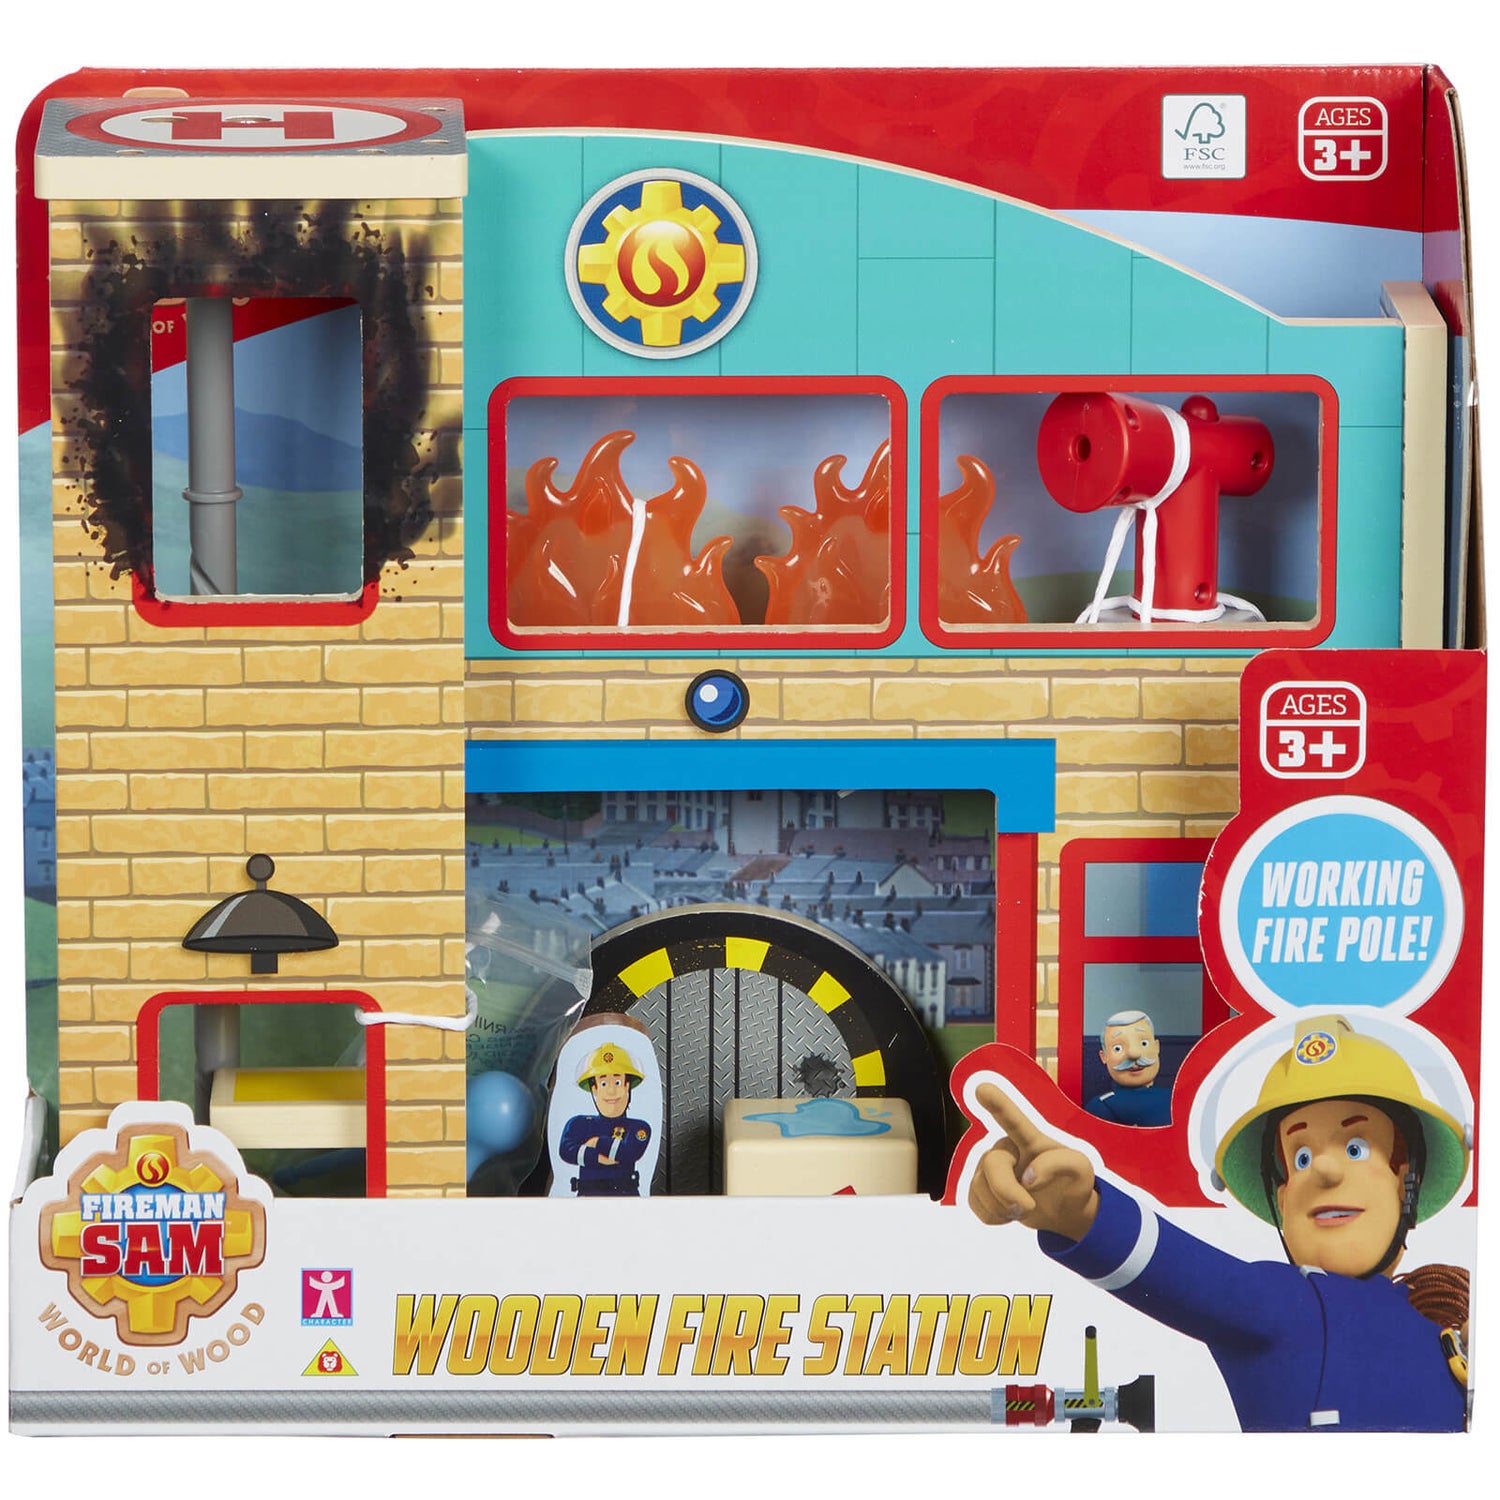 Fireman Sam - Wooden Fire Station